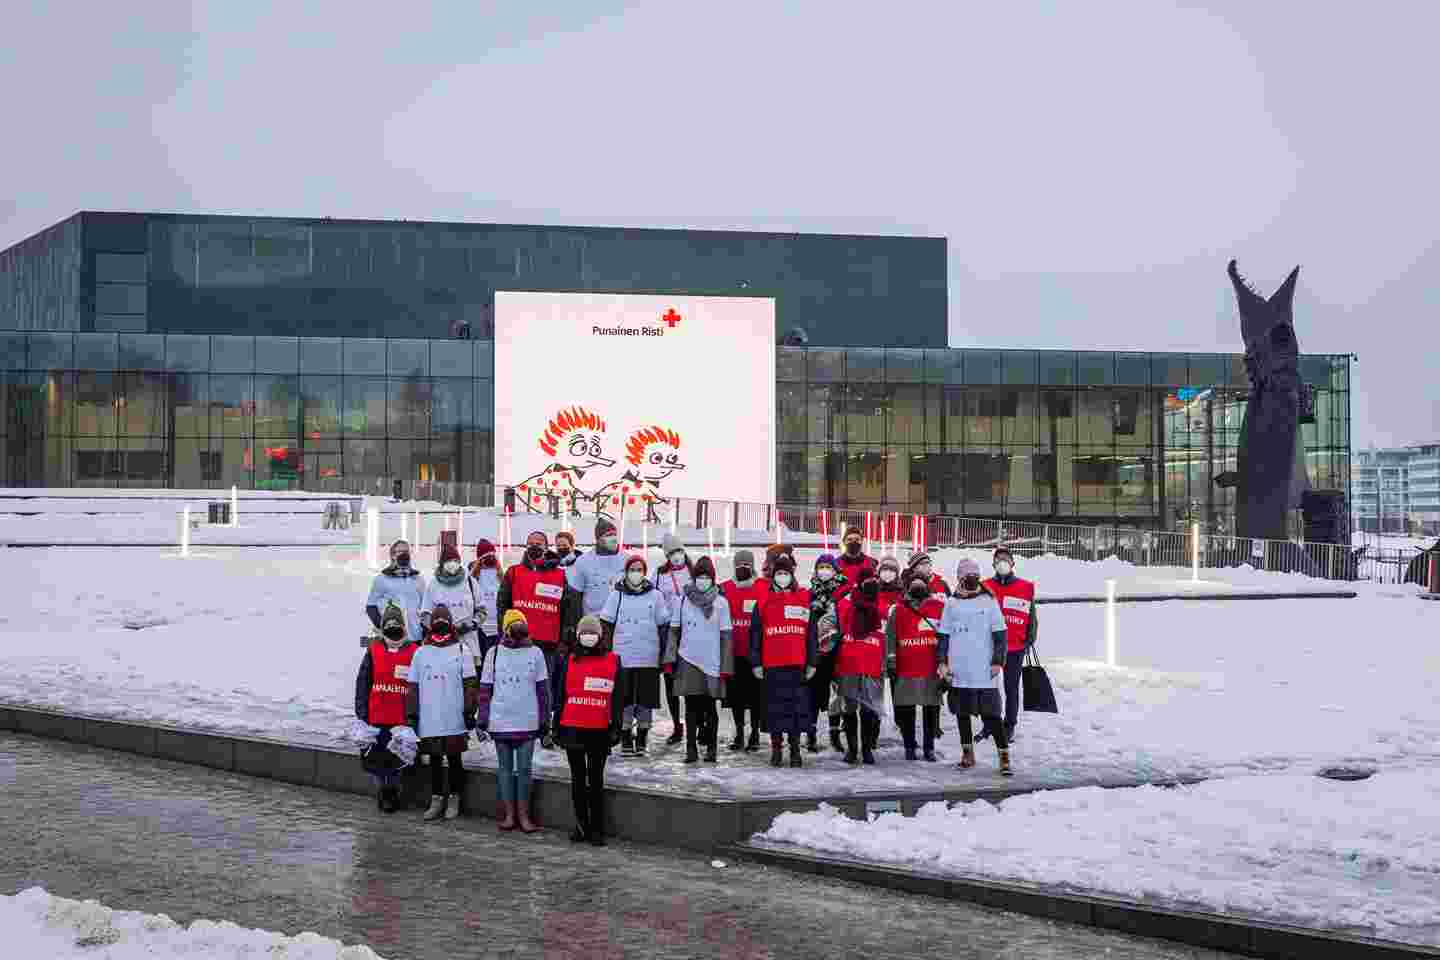 Ryhmäkuva, jossa Punaisen Ristin vapaaehtoiset ja kumpppanit poseeraavat Musiikkitalon valotaululla olevan Punaisen Ristin ja Moomin by Arabian yhteistyökampanjaan liittyvän kuvan edessä.